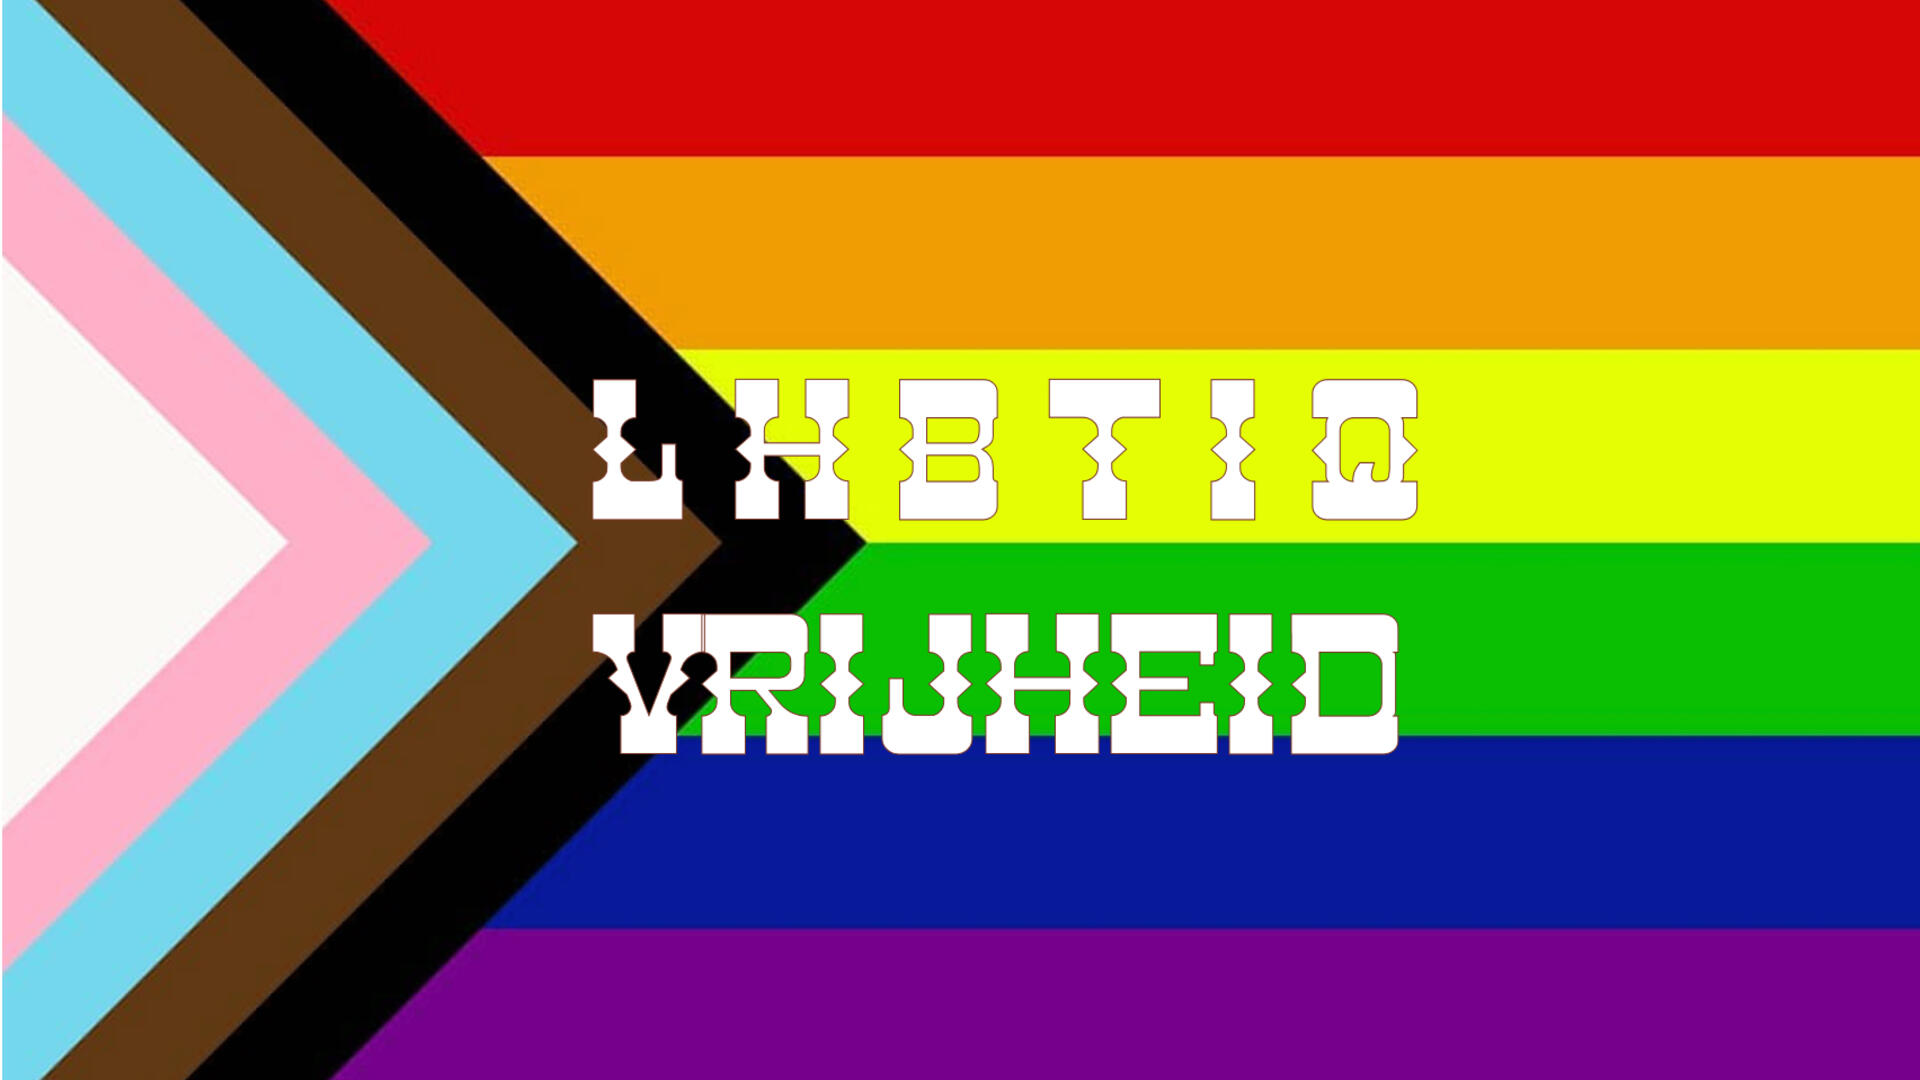 Nieuwste regenboogvlag met tekst "LHBTIQ vrijheid"